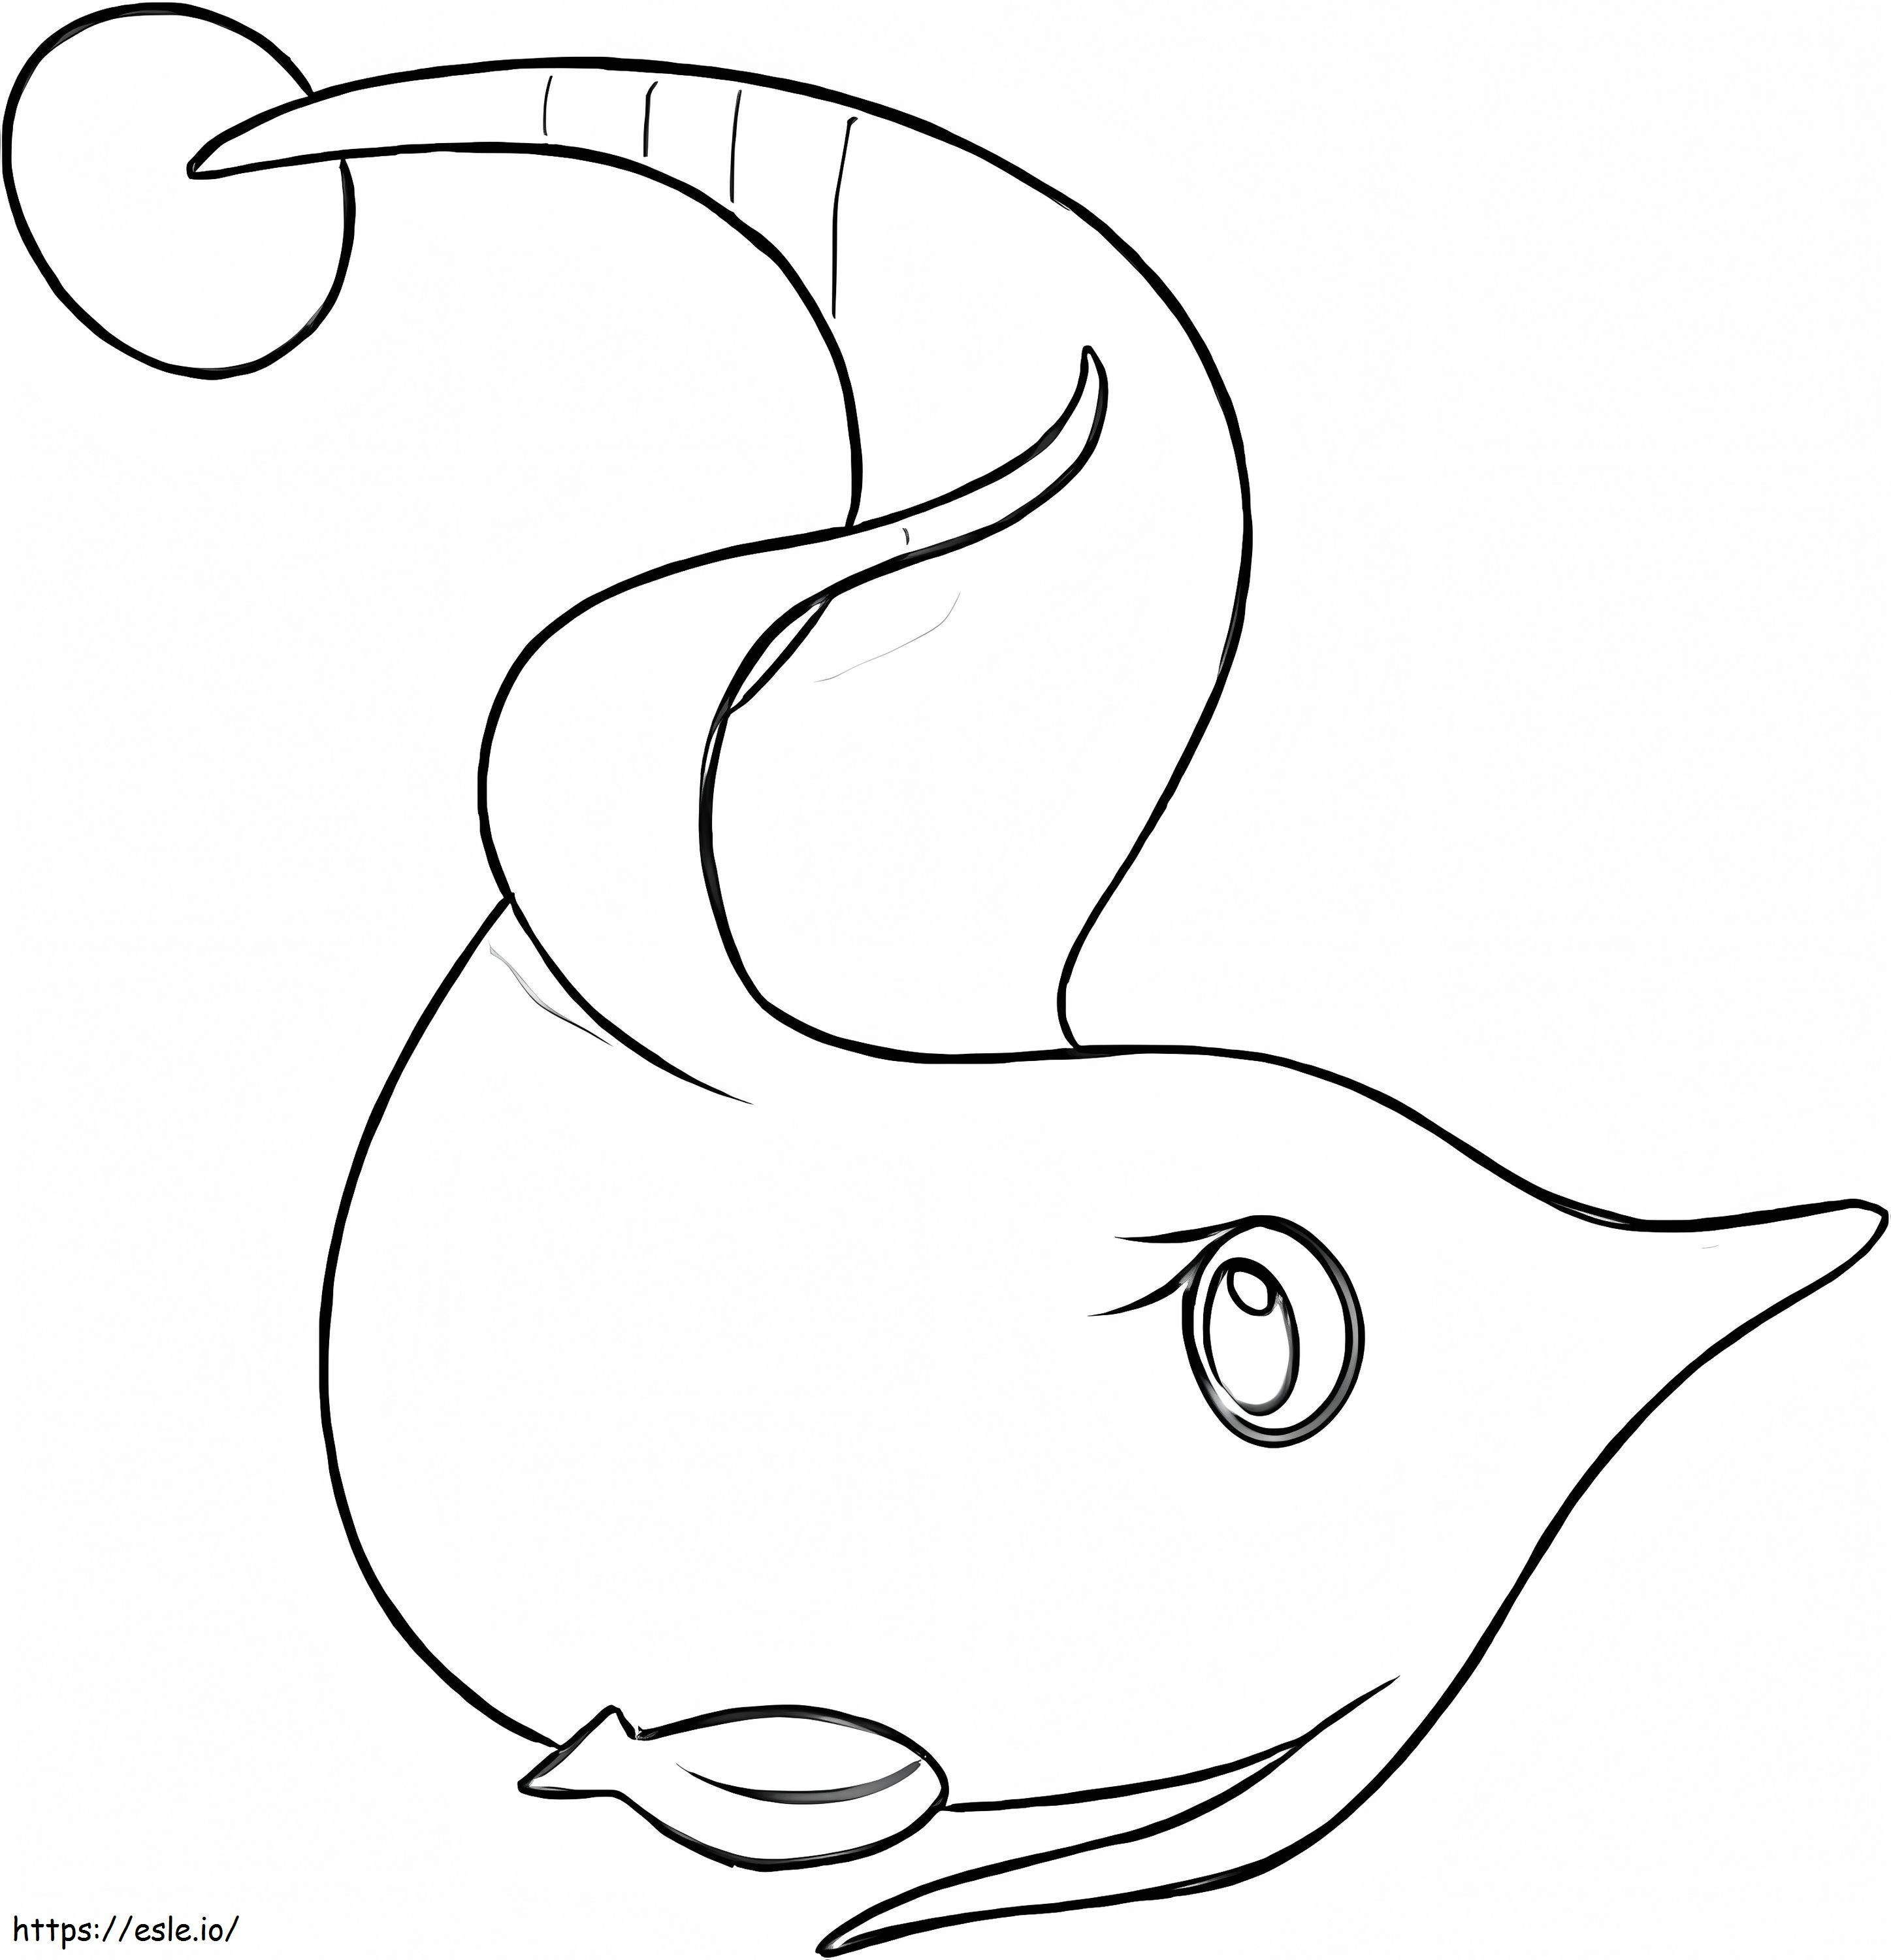 Coloriage Pokémon Gorebyss Gen 3 à imprimer dessin